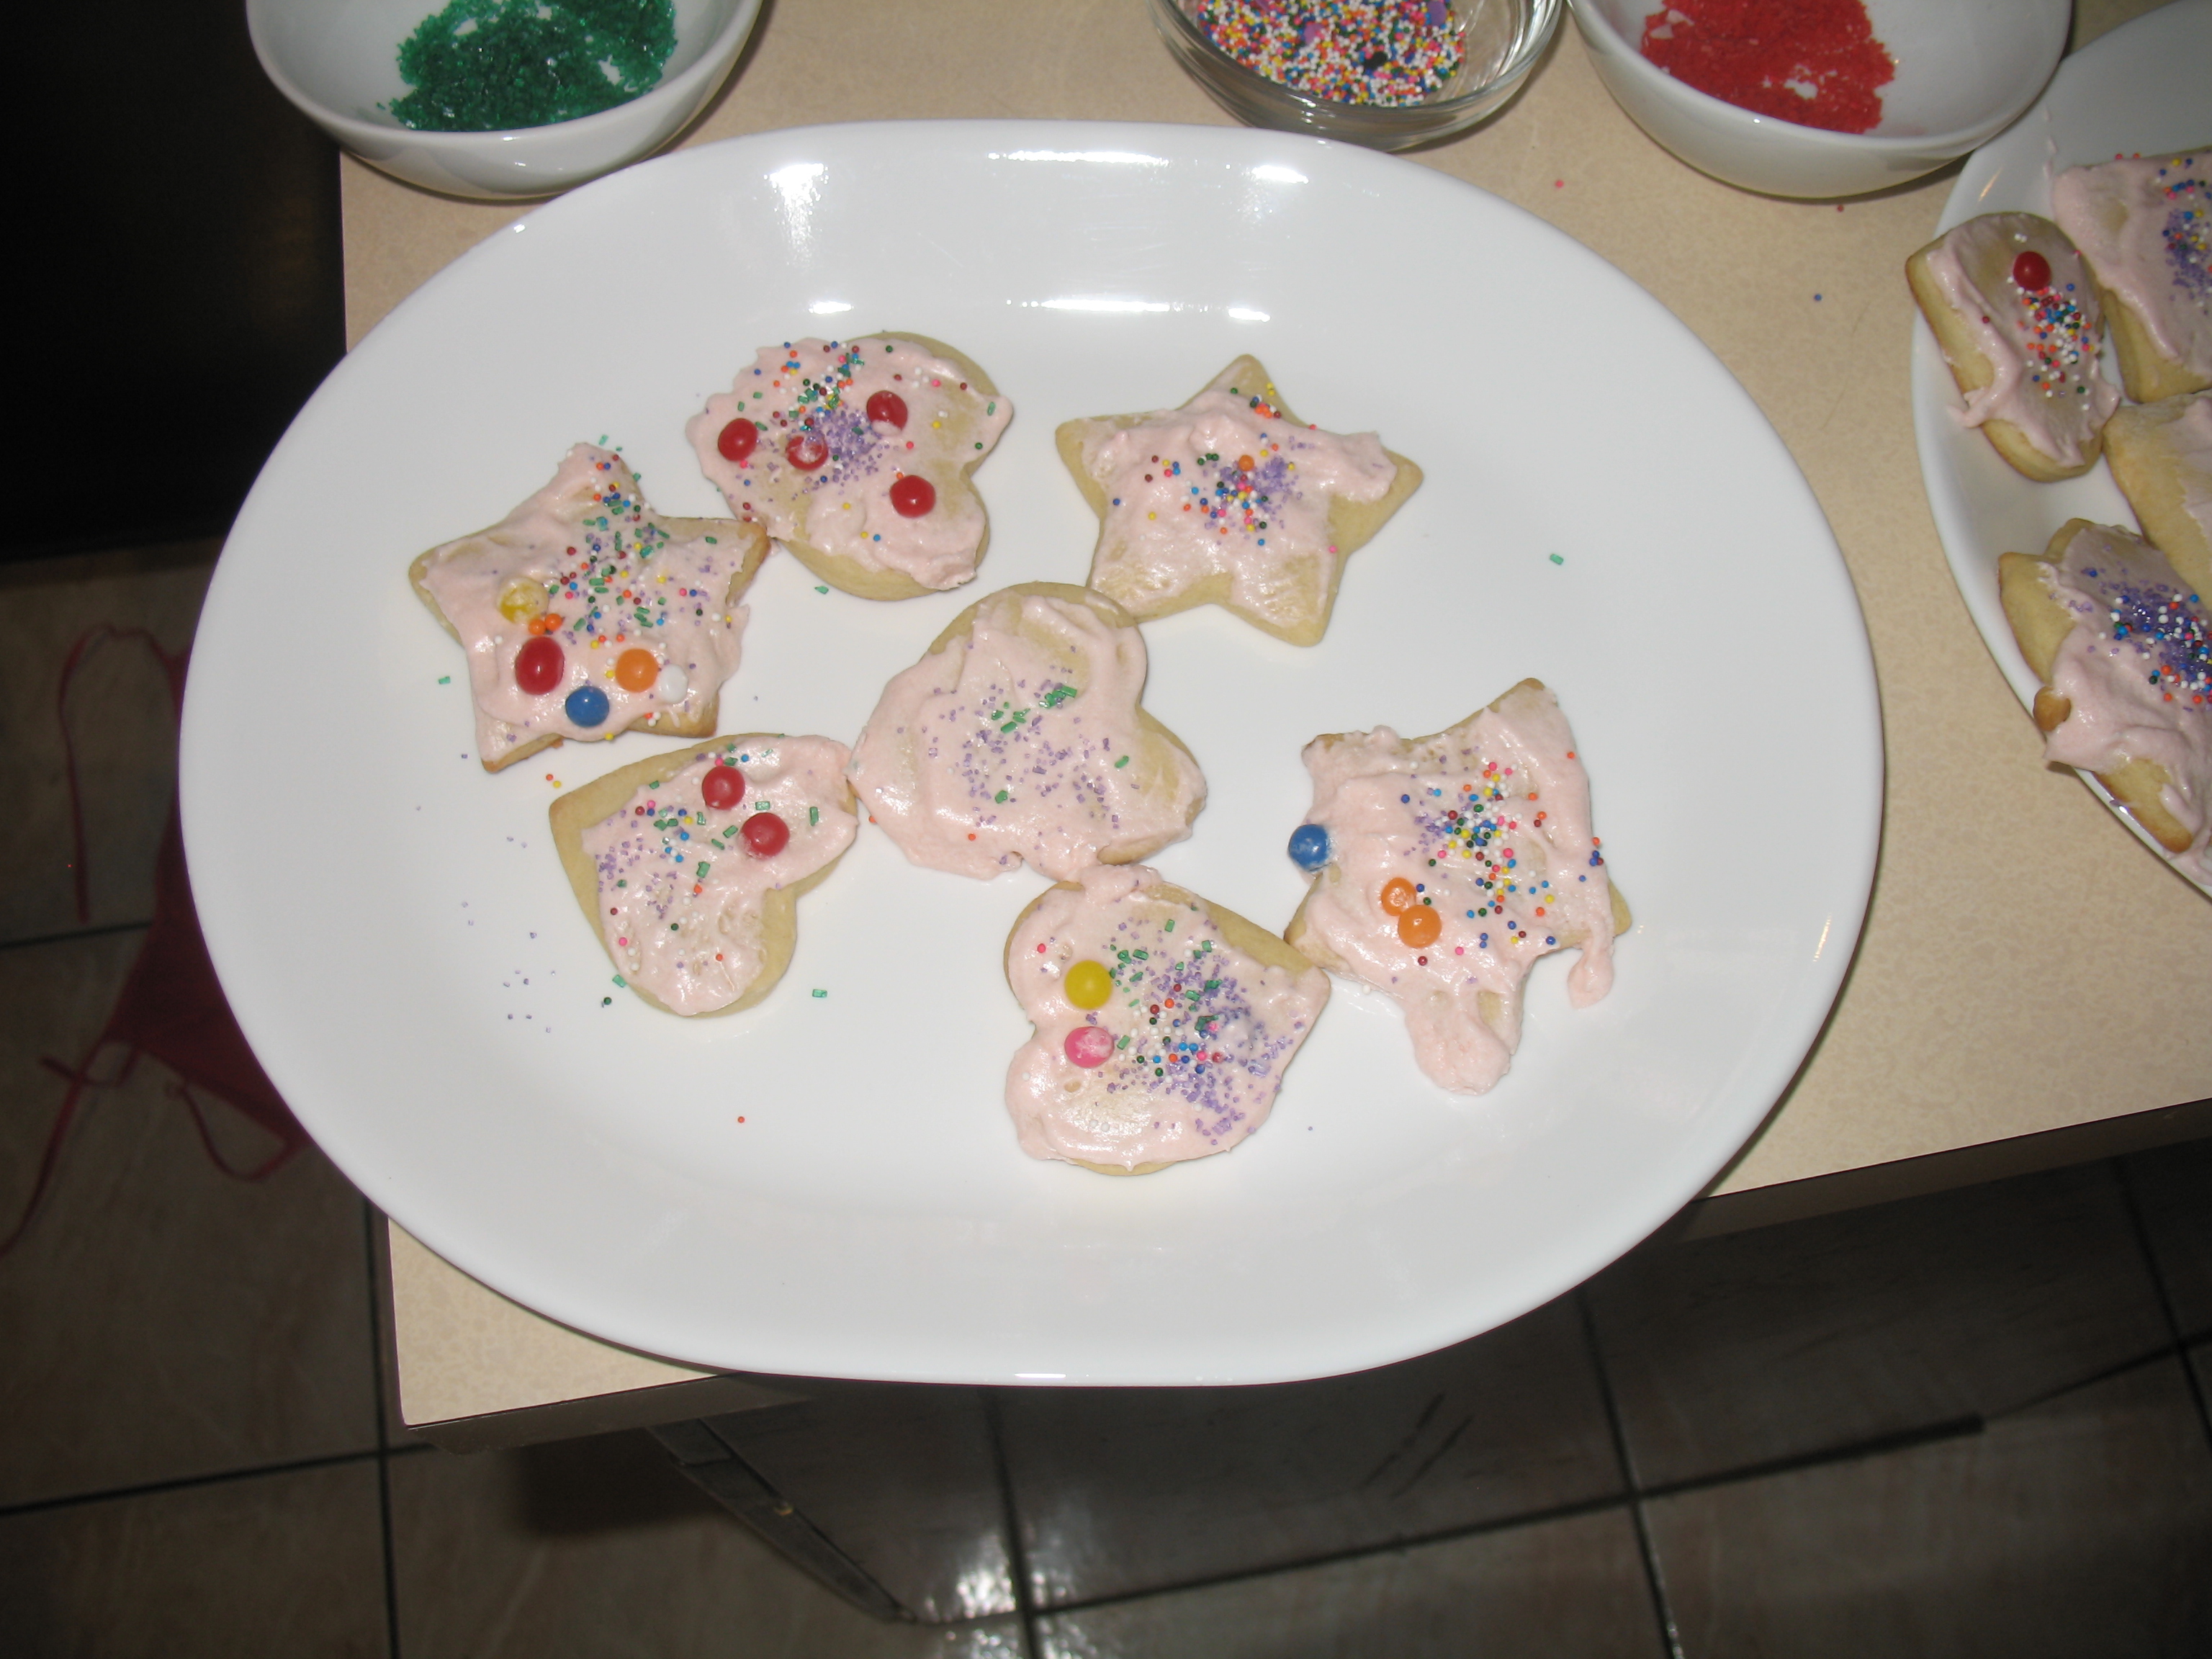 Juliet's cookies